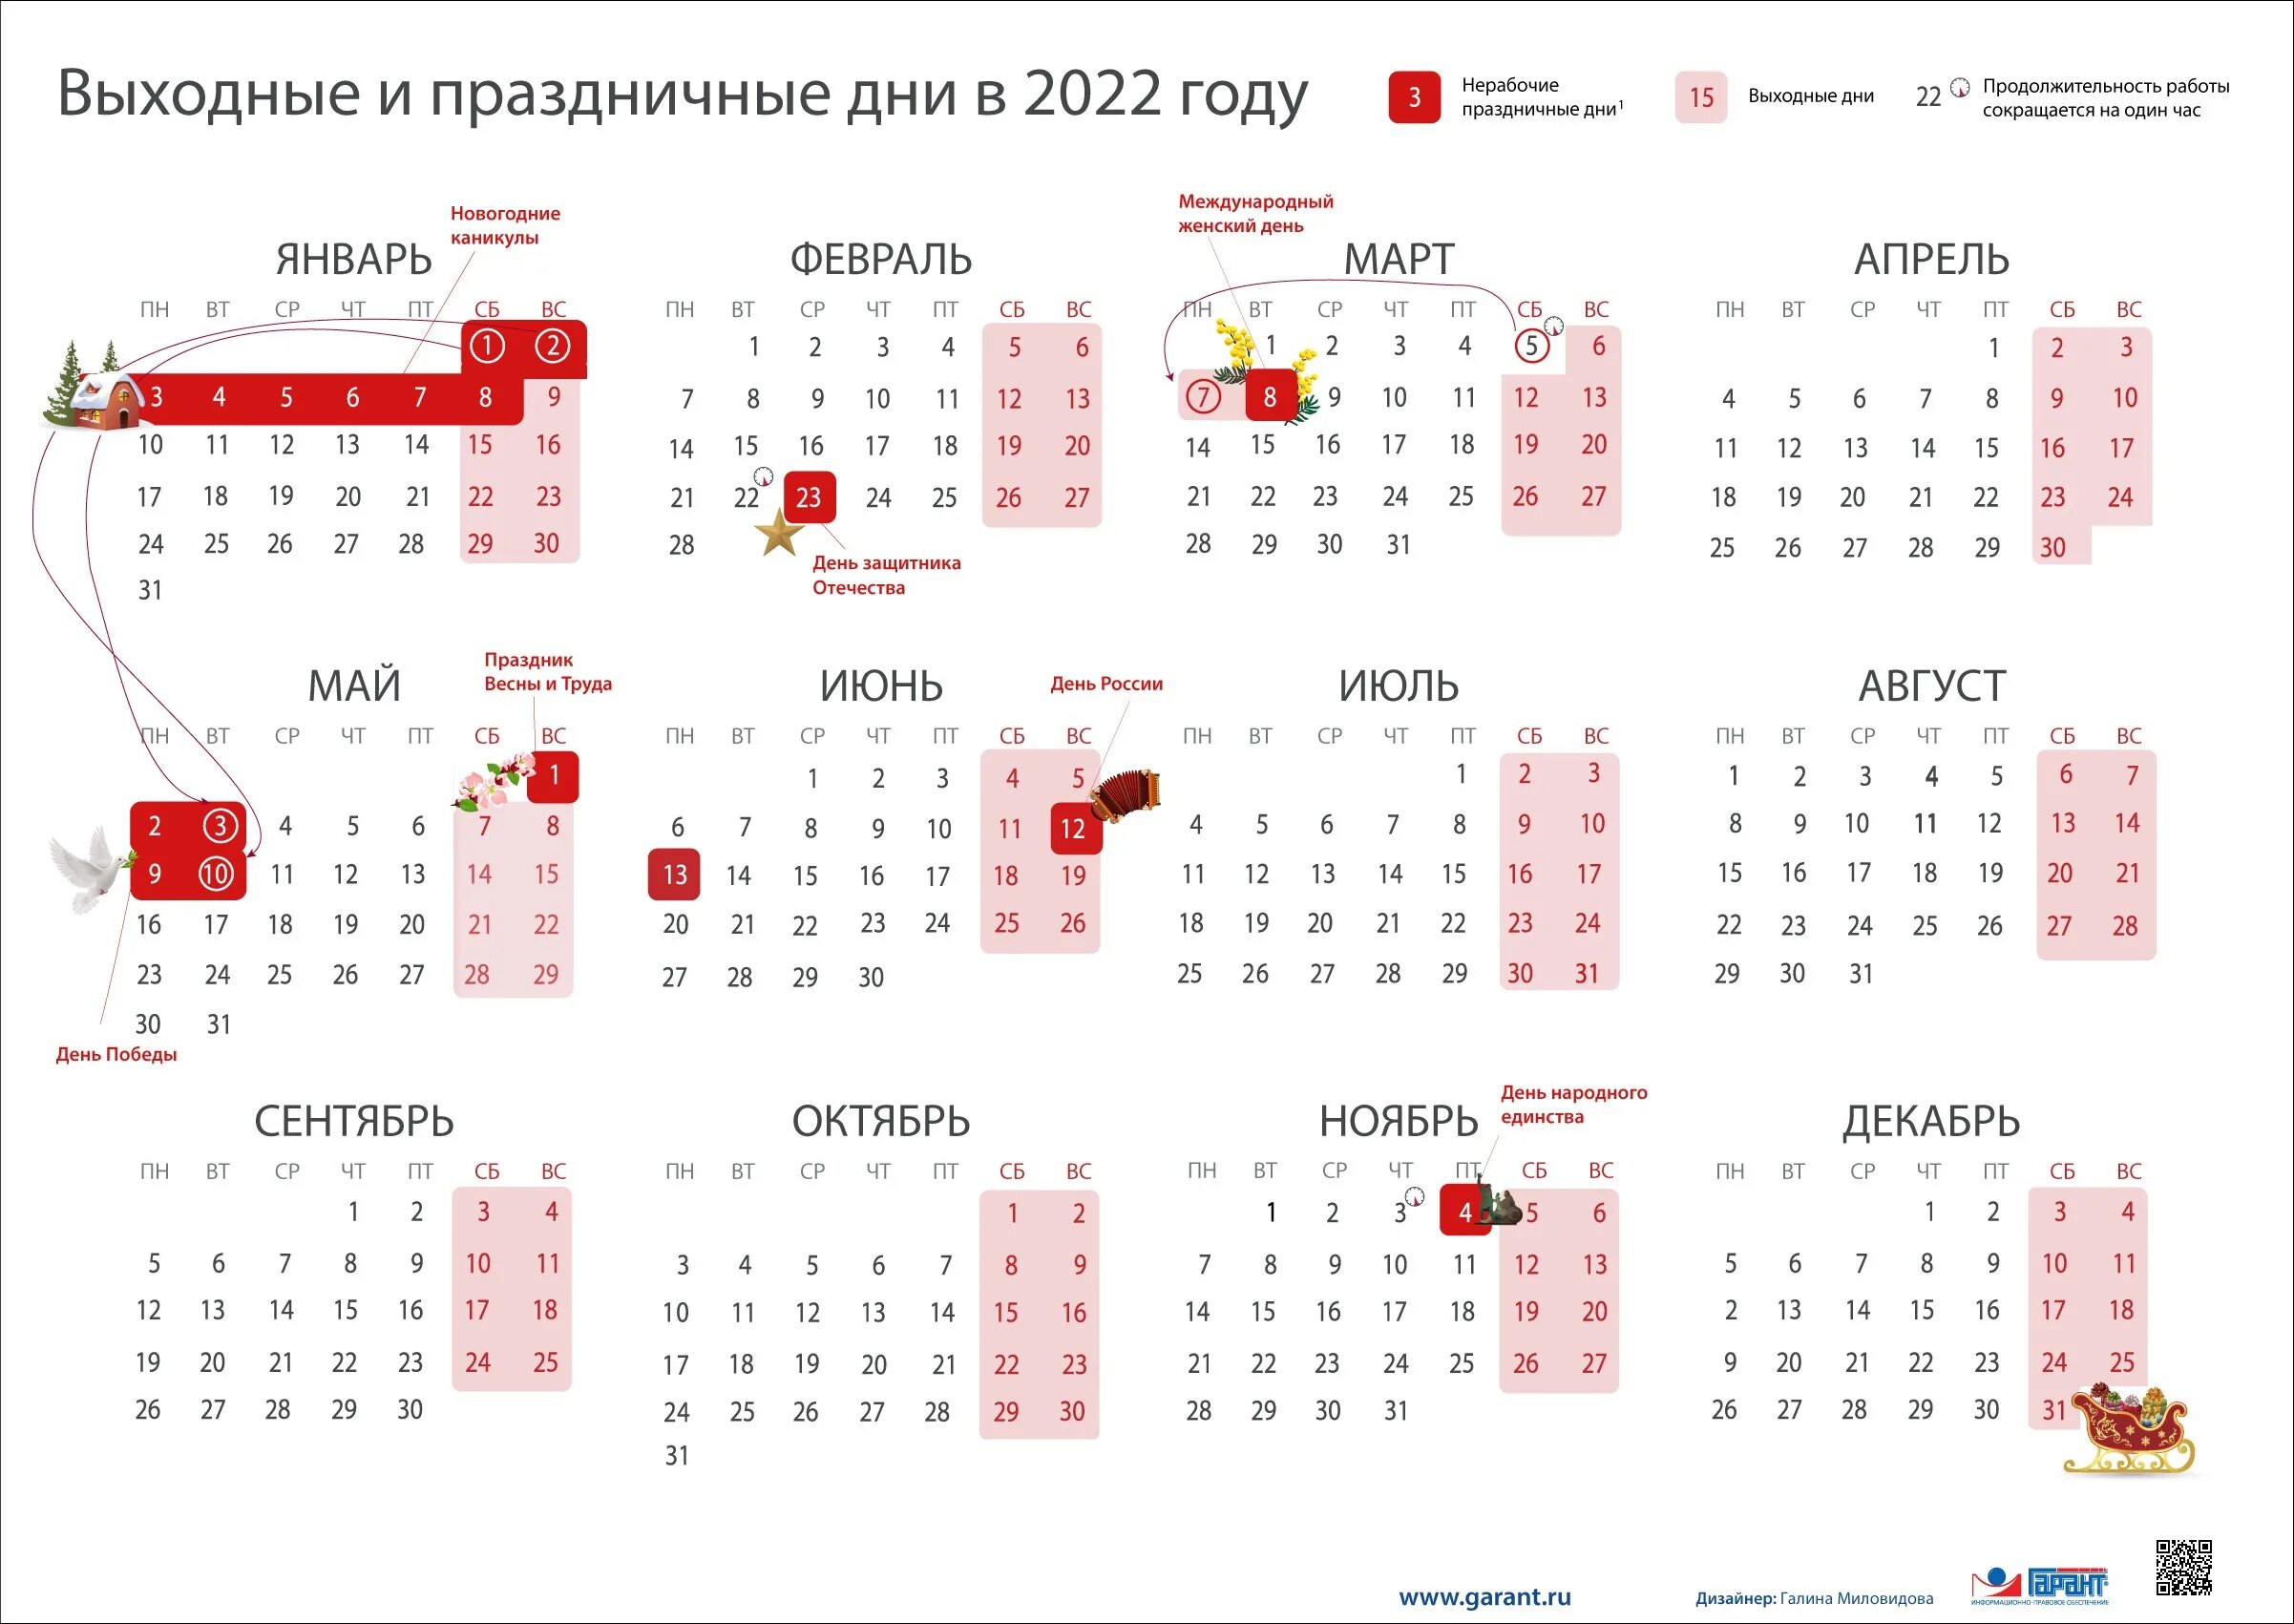 Праздники февраль производственный календарь. Календарь выходных и праздничных дней на 2022 год в России. Перенос праздников 2022 год утвержденный правительством РФ. Выходные и праздники в 2022 года в России нерабочие дни календарь. Выходные и праздничные дни в феврале 2022 года в России.